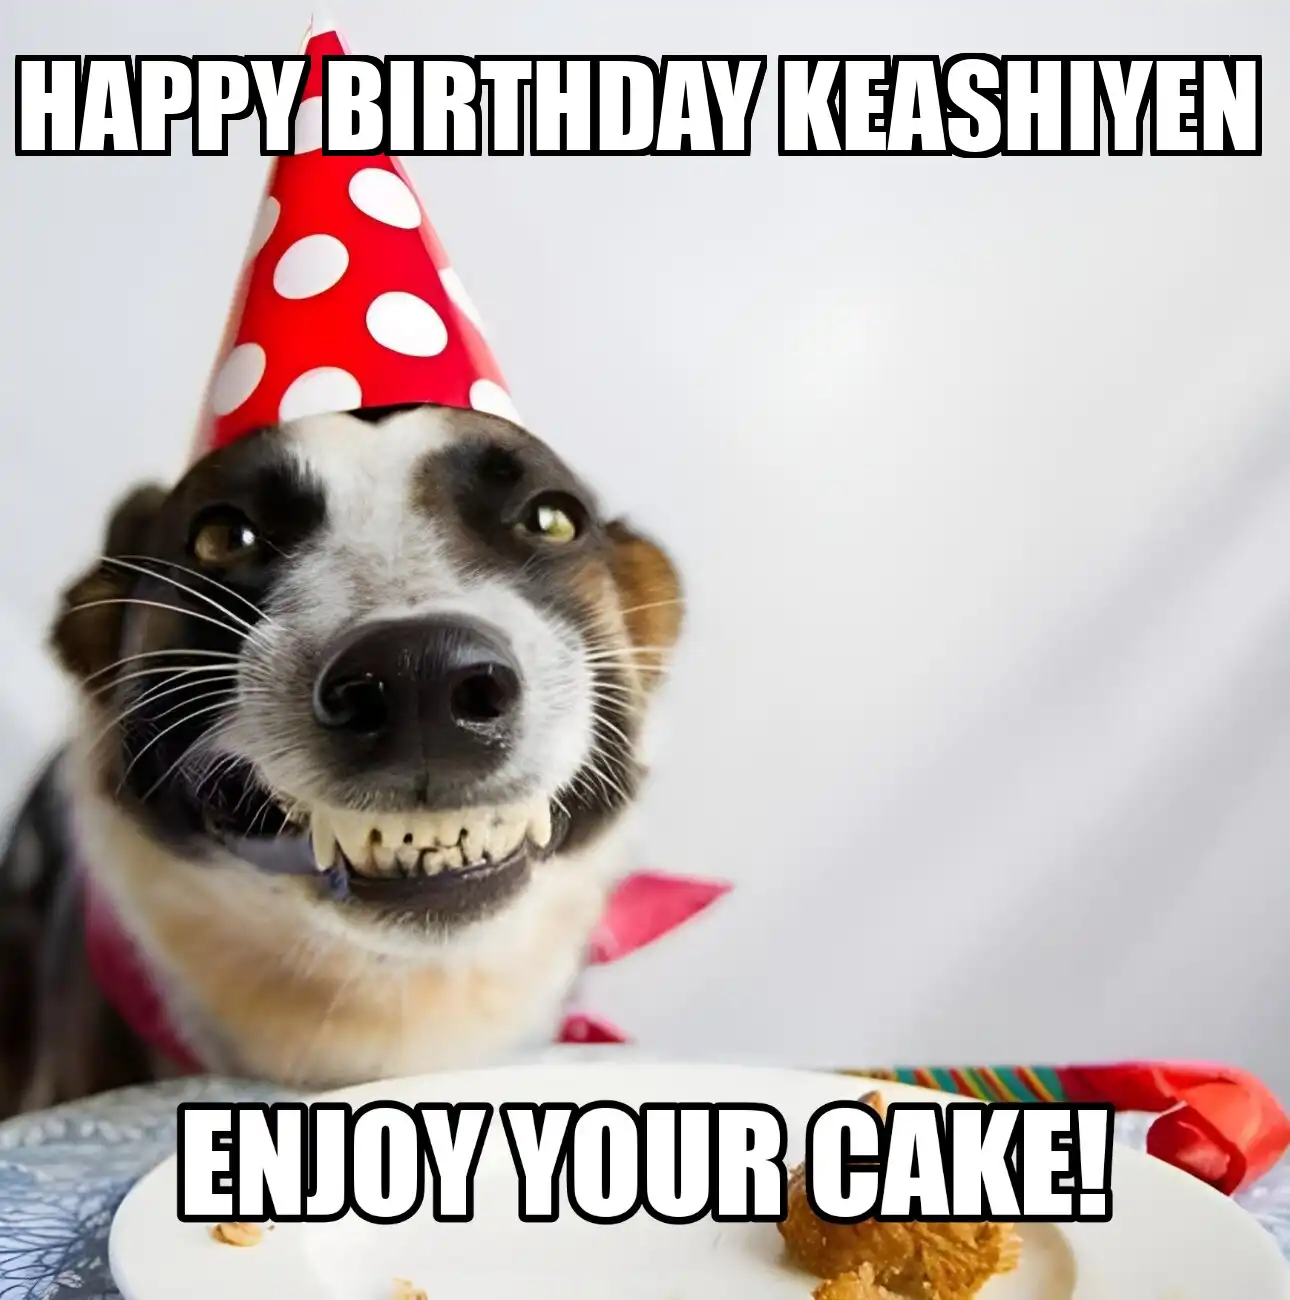 Happy Birthday Keashiyen Enjoy Your Cake Dog Meme